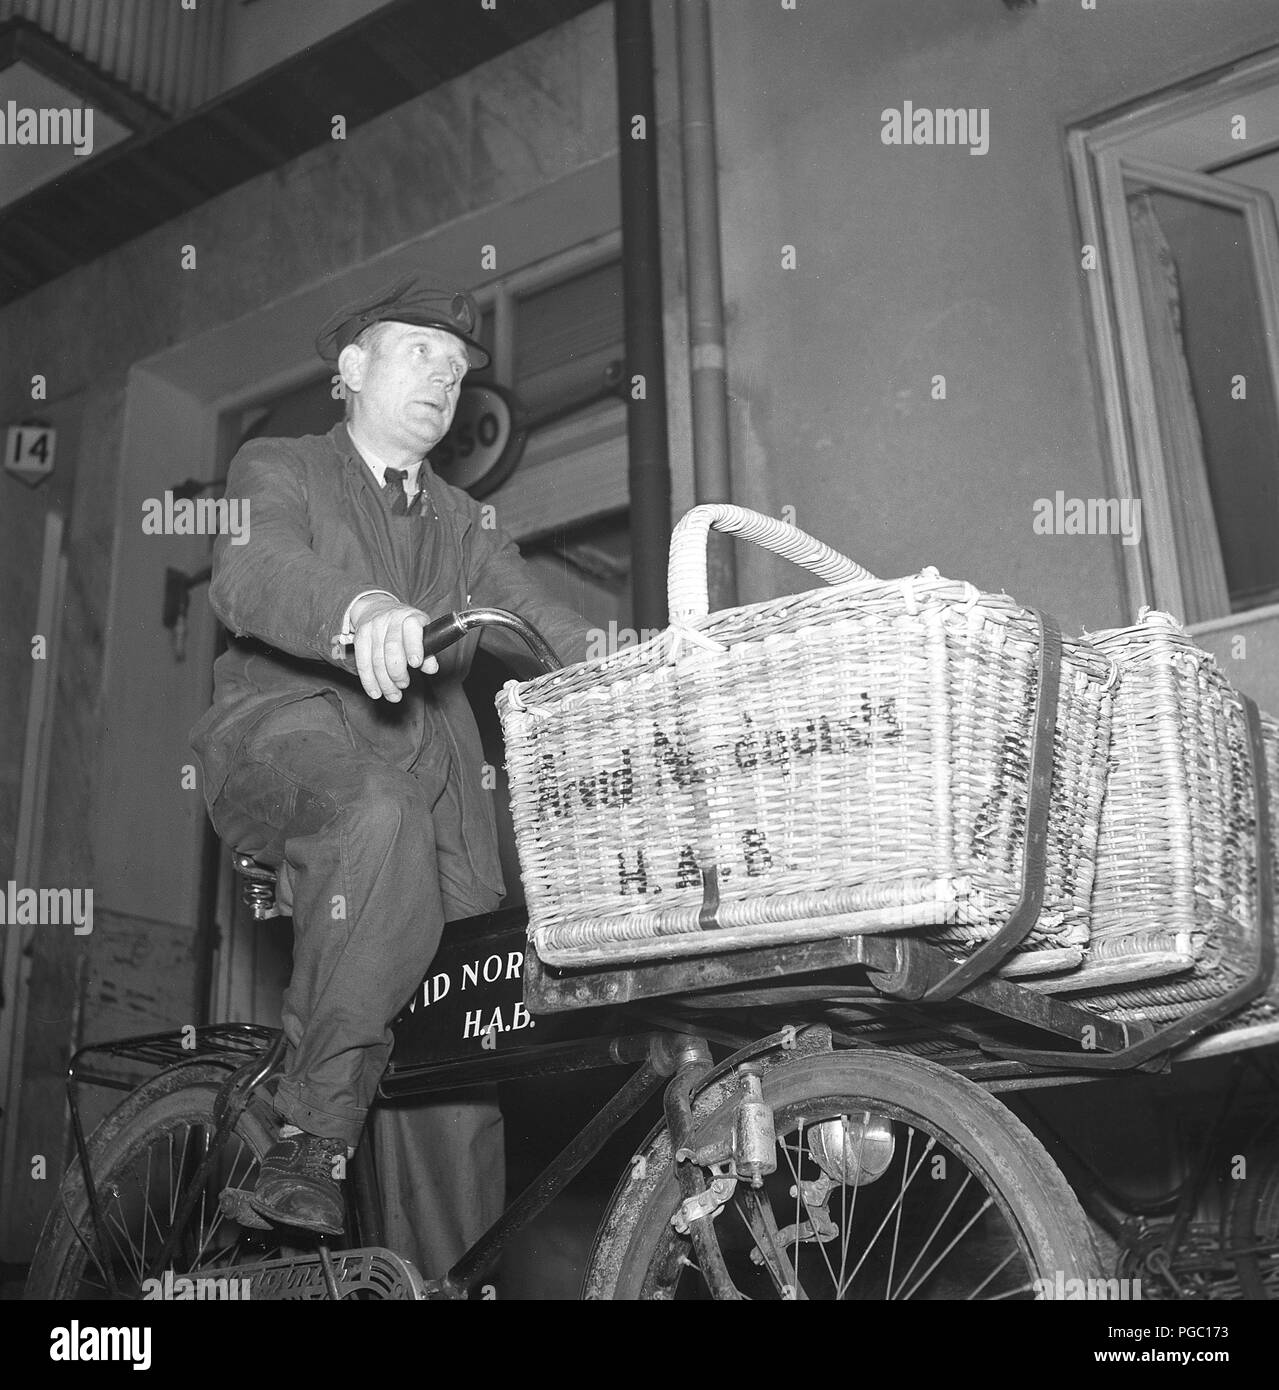 1940 Transport. Un homme âgé travaillant comme un livreur avec des provisions sur son vélo pour être livrés aux clients de la société Arvid Nordquist. La Suède des années 40. Une photo Kristoffersson125-1 Banque D'Images